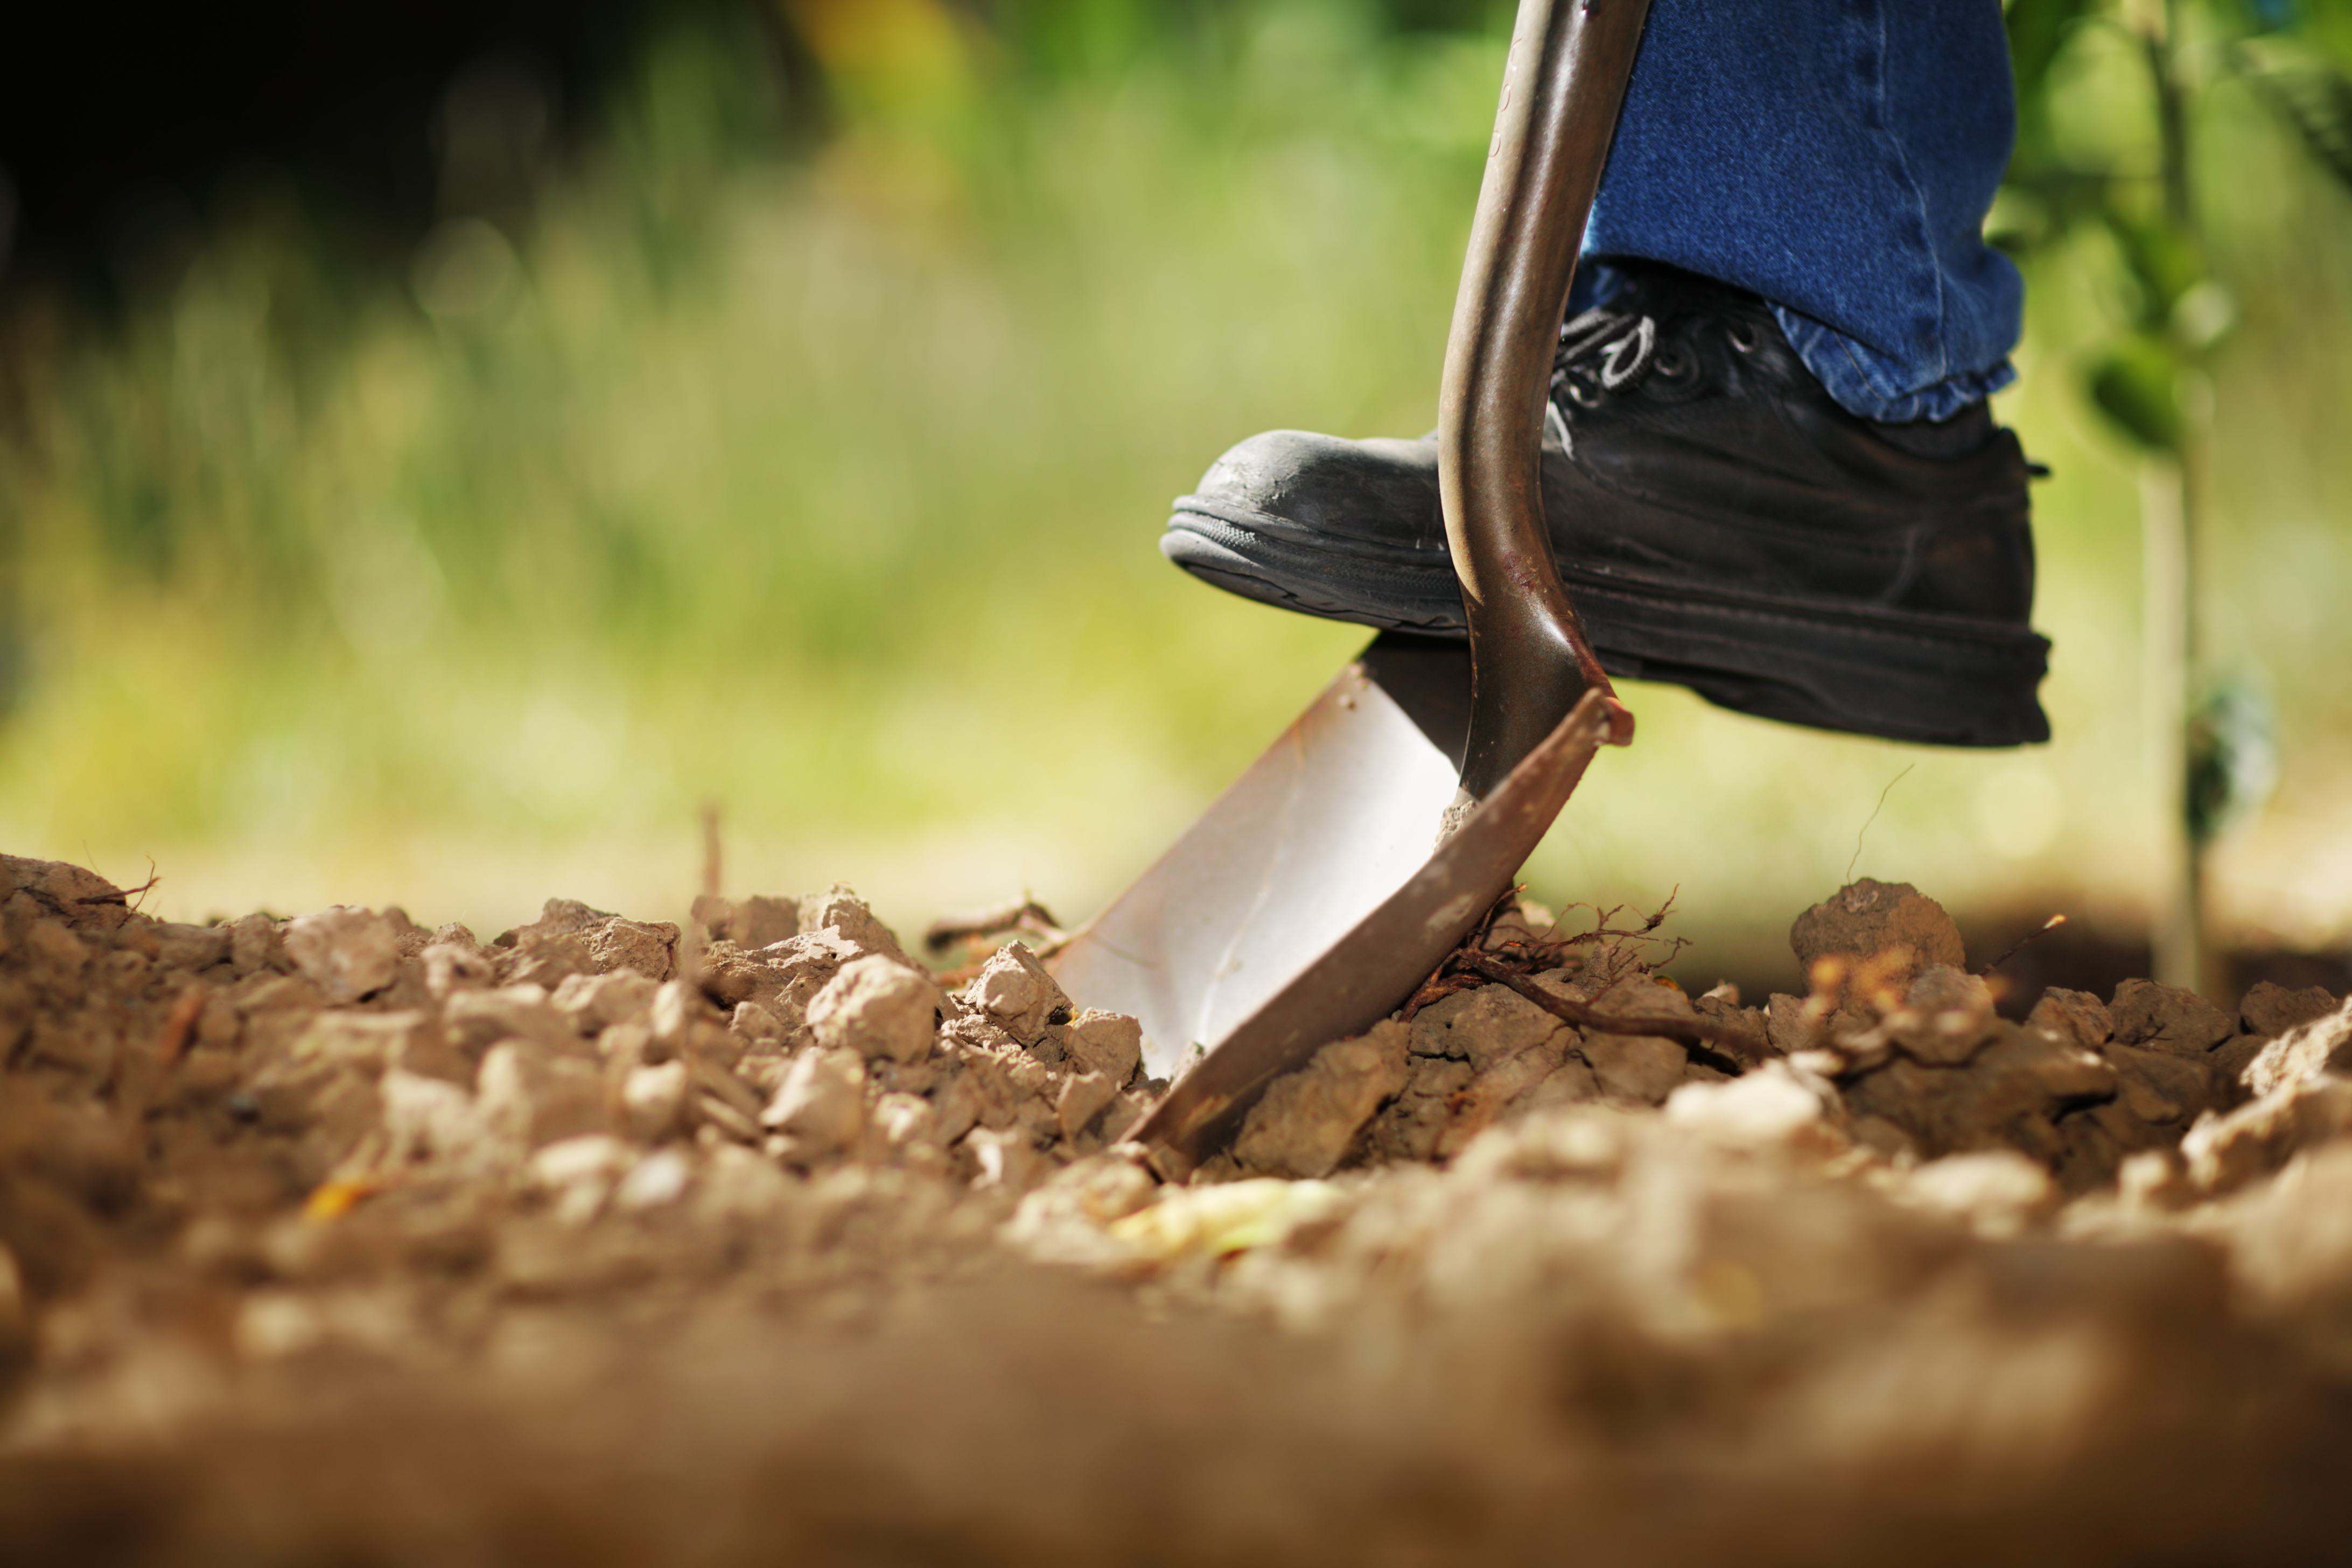 Personne creusant la terre avec une pelle | Source : Shutterstock